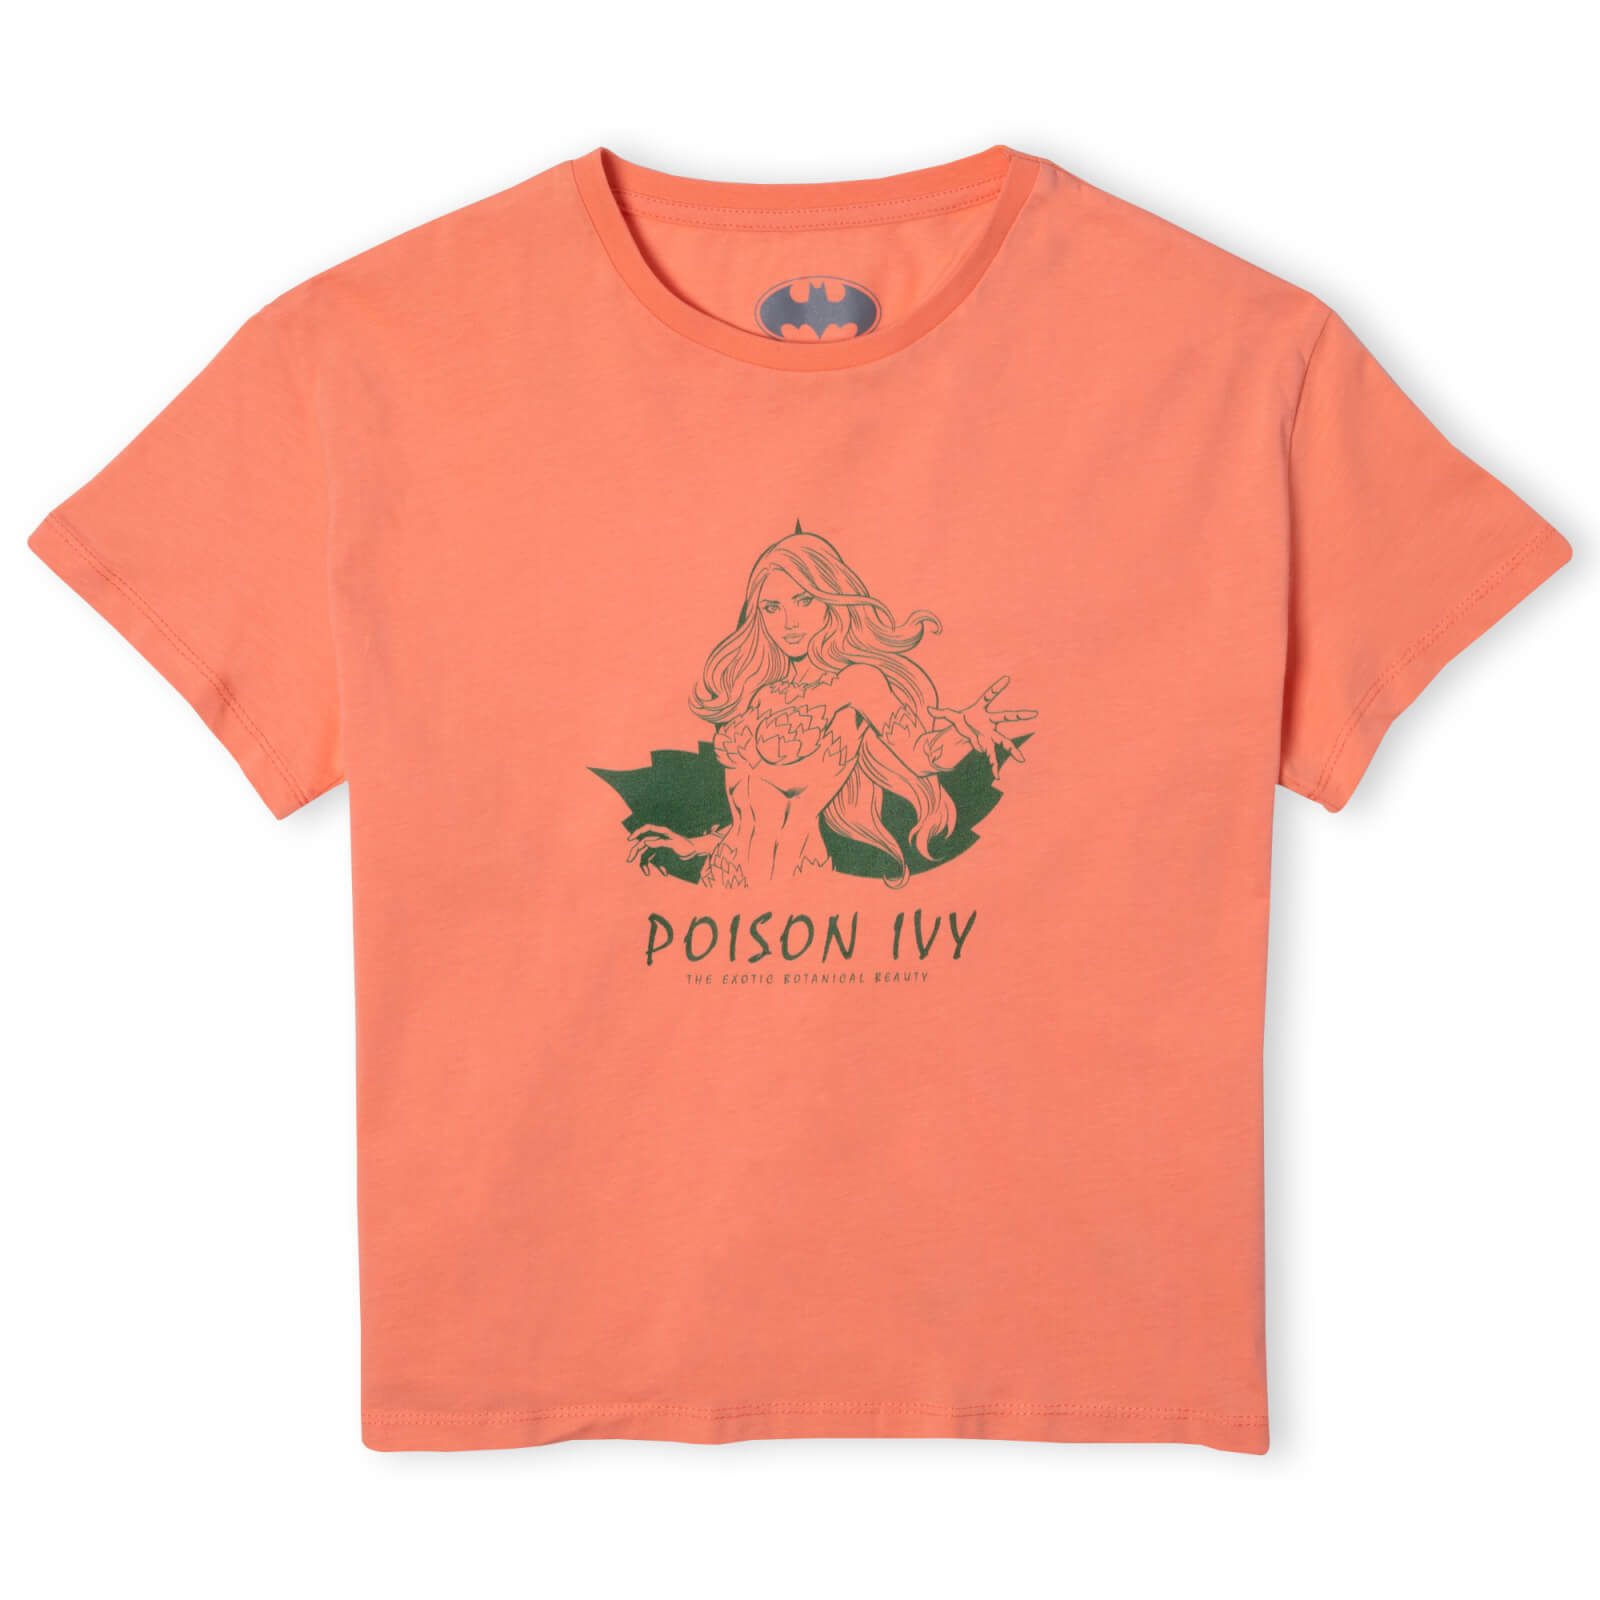 Batman Villains Poison Ivy Women's Cropped T-Shirt - Coral - XS - Burgundy Acid Wash